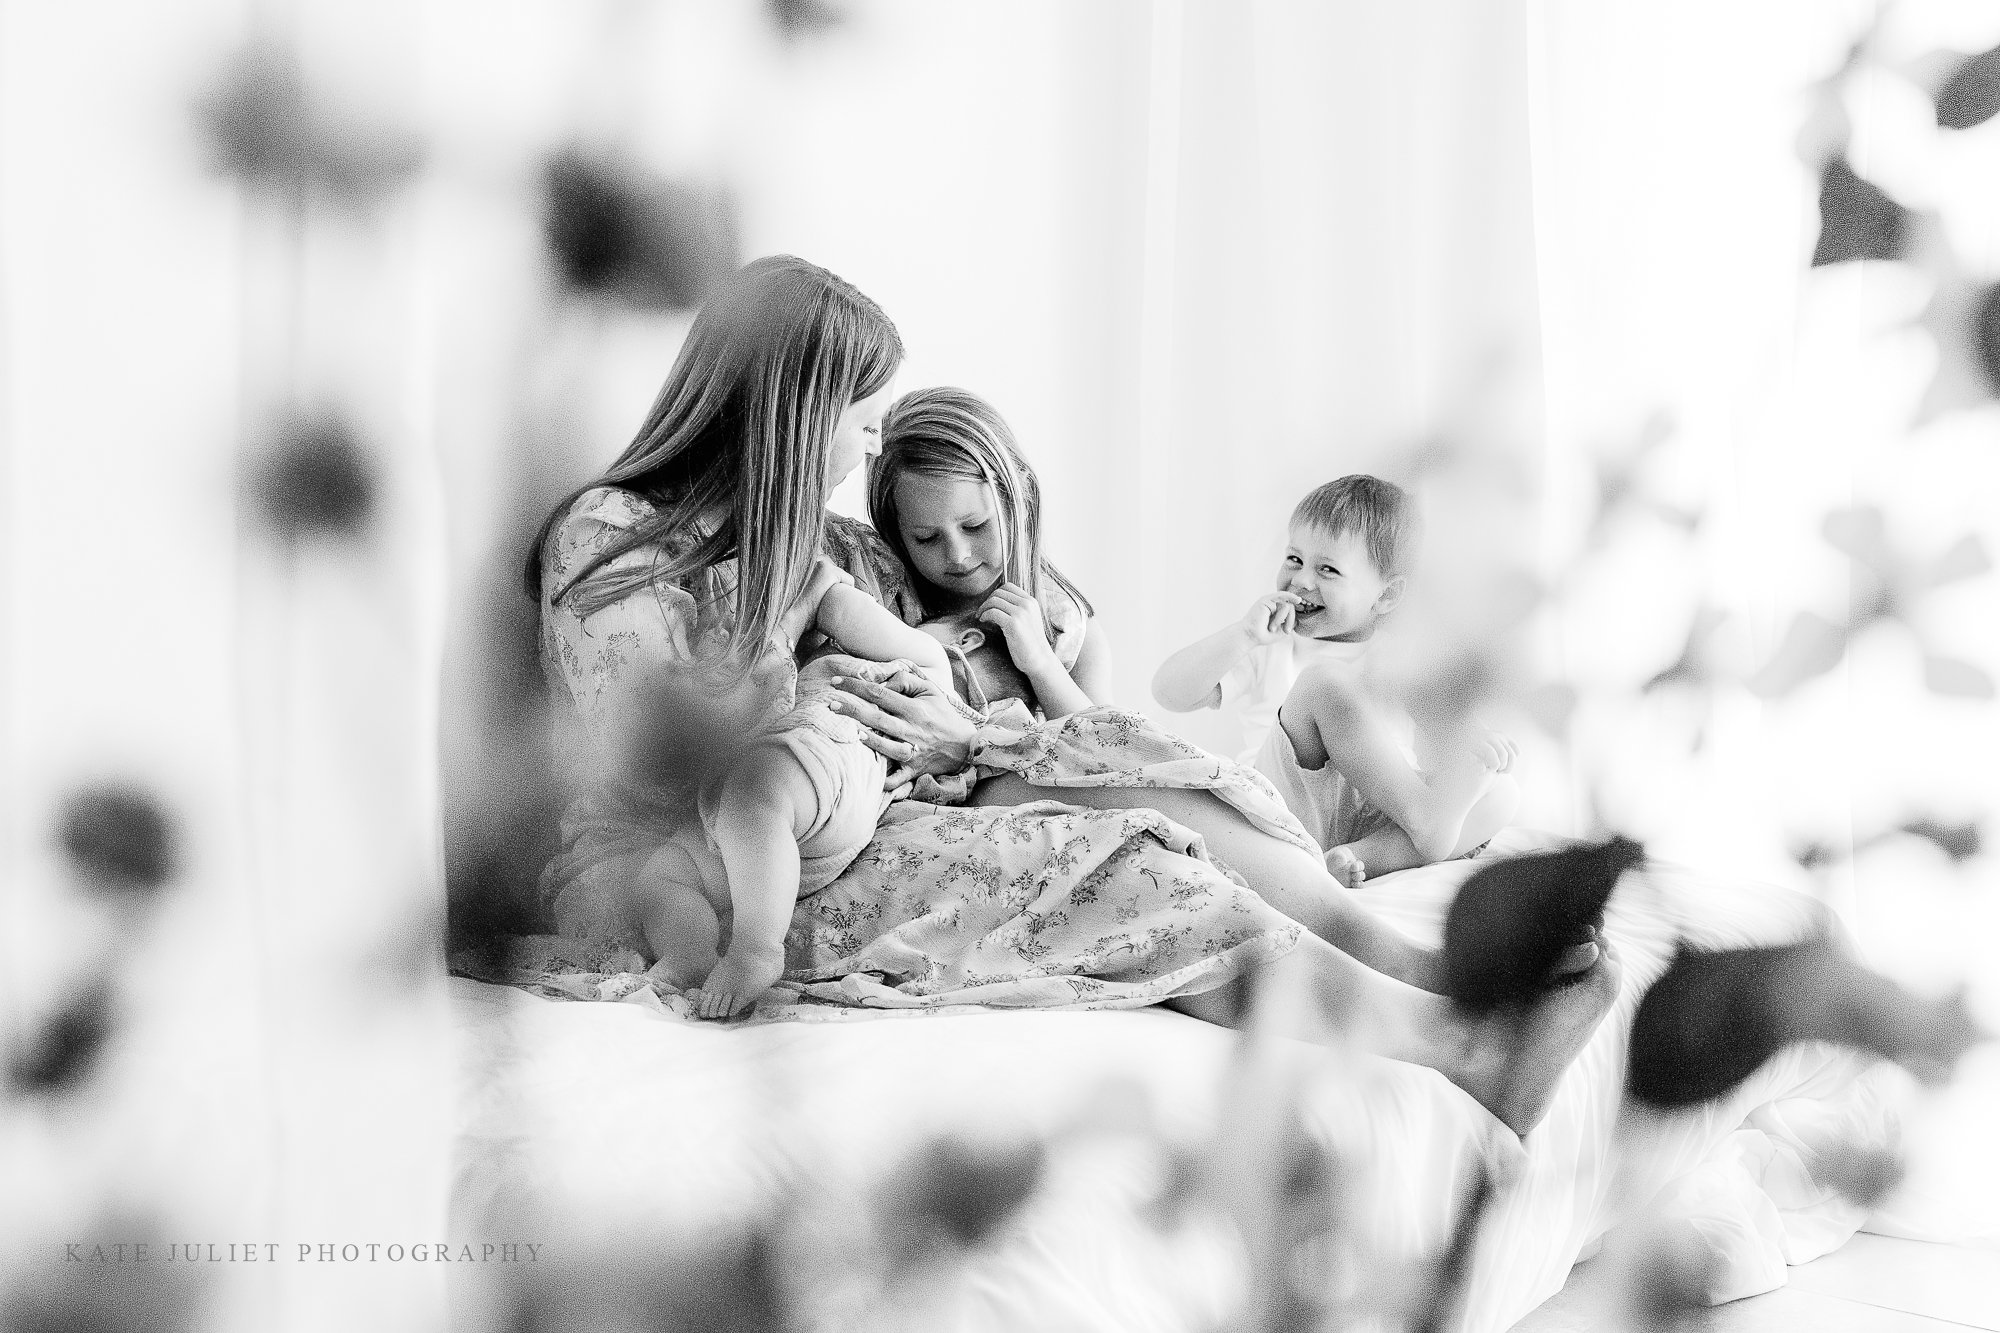 kate-juliet-photography-2022-motherhood-event-web-48.jpg